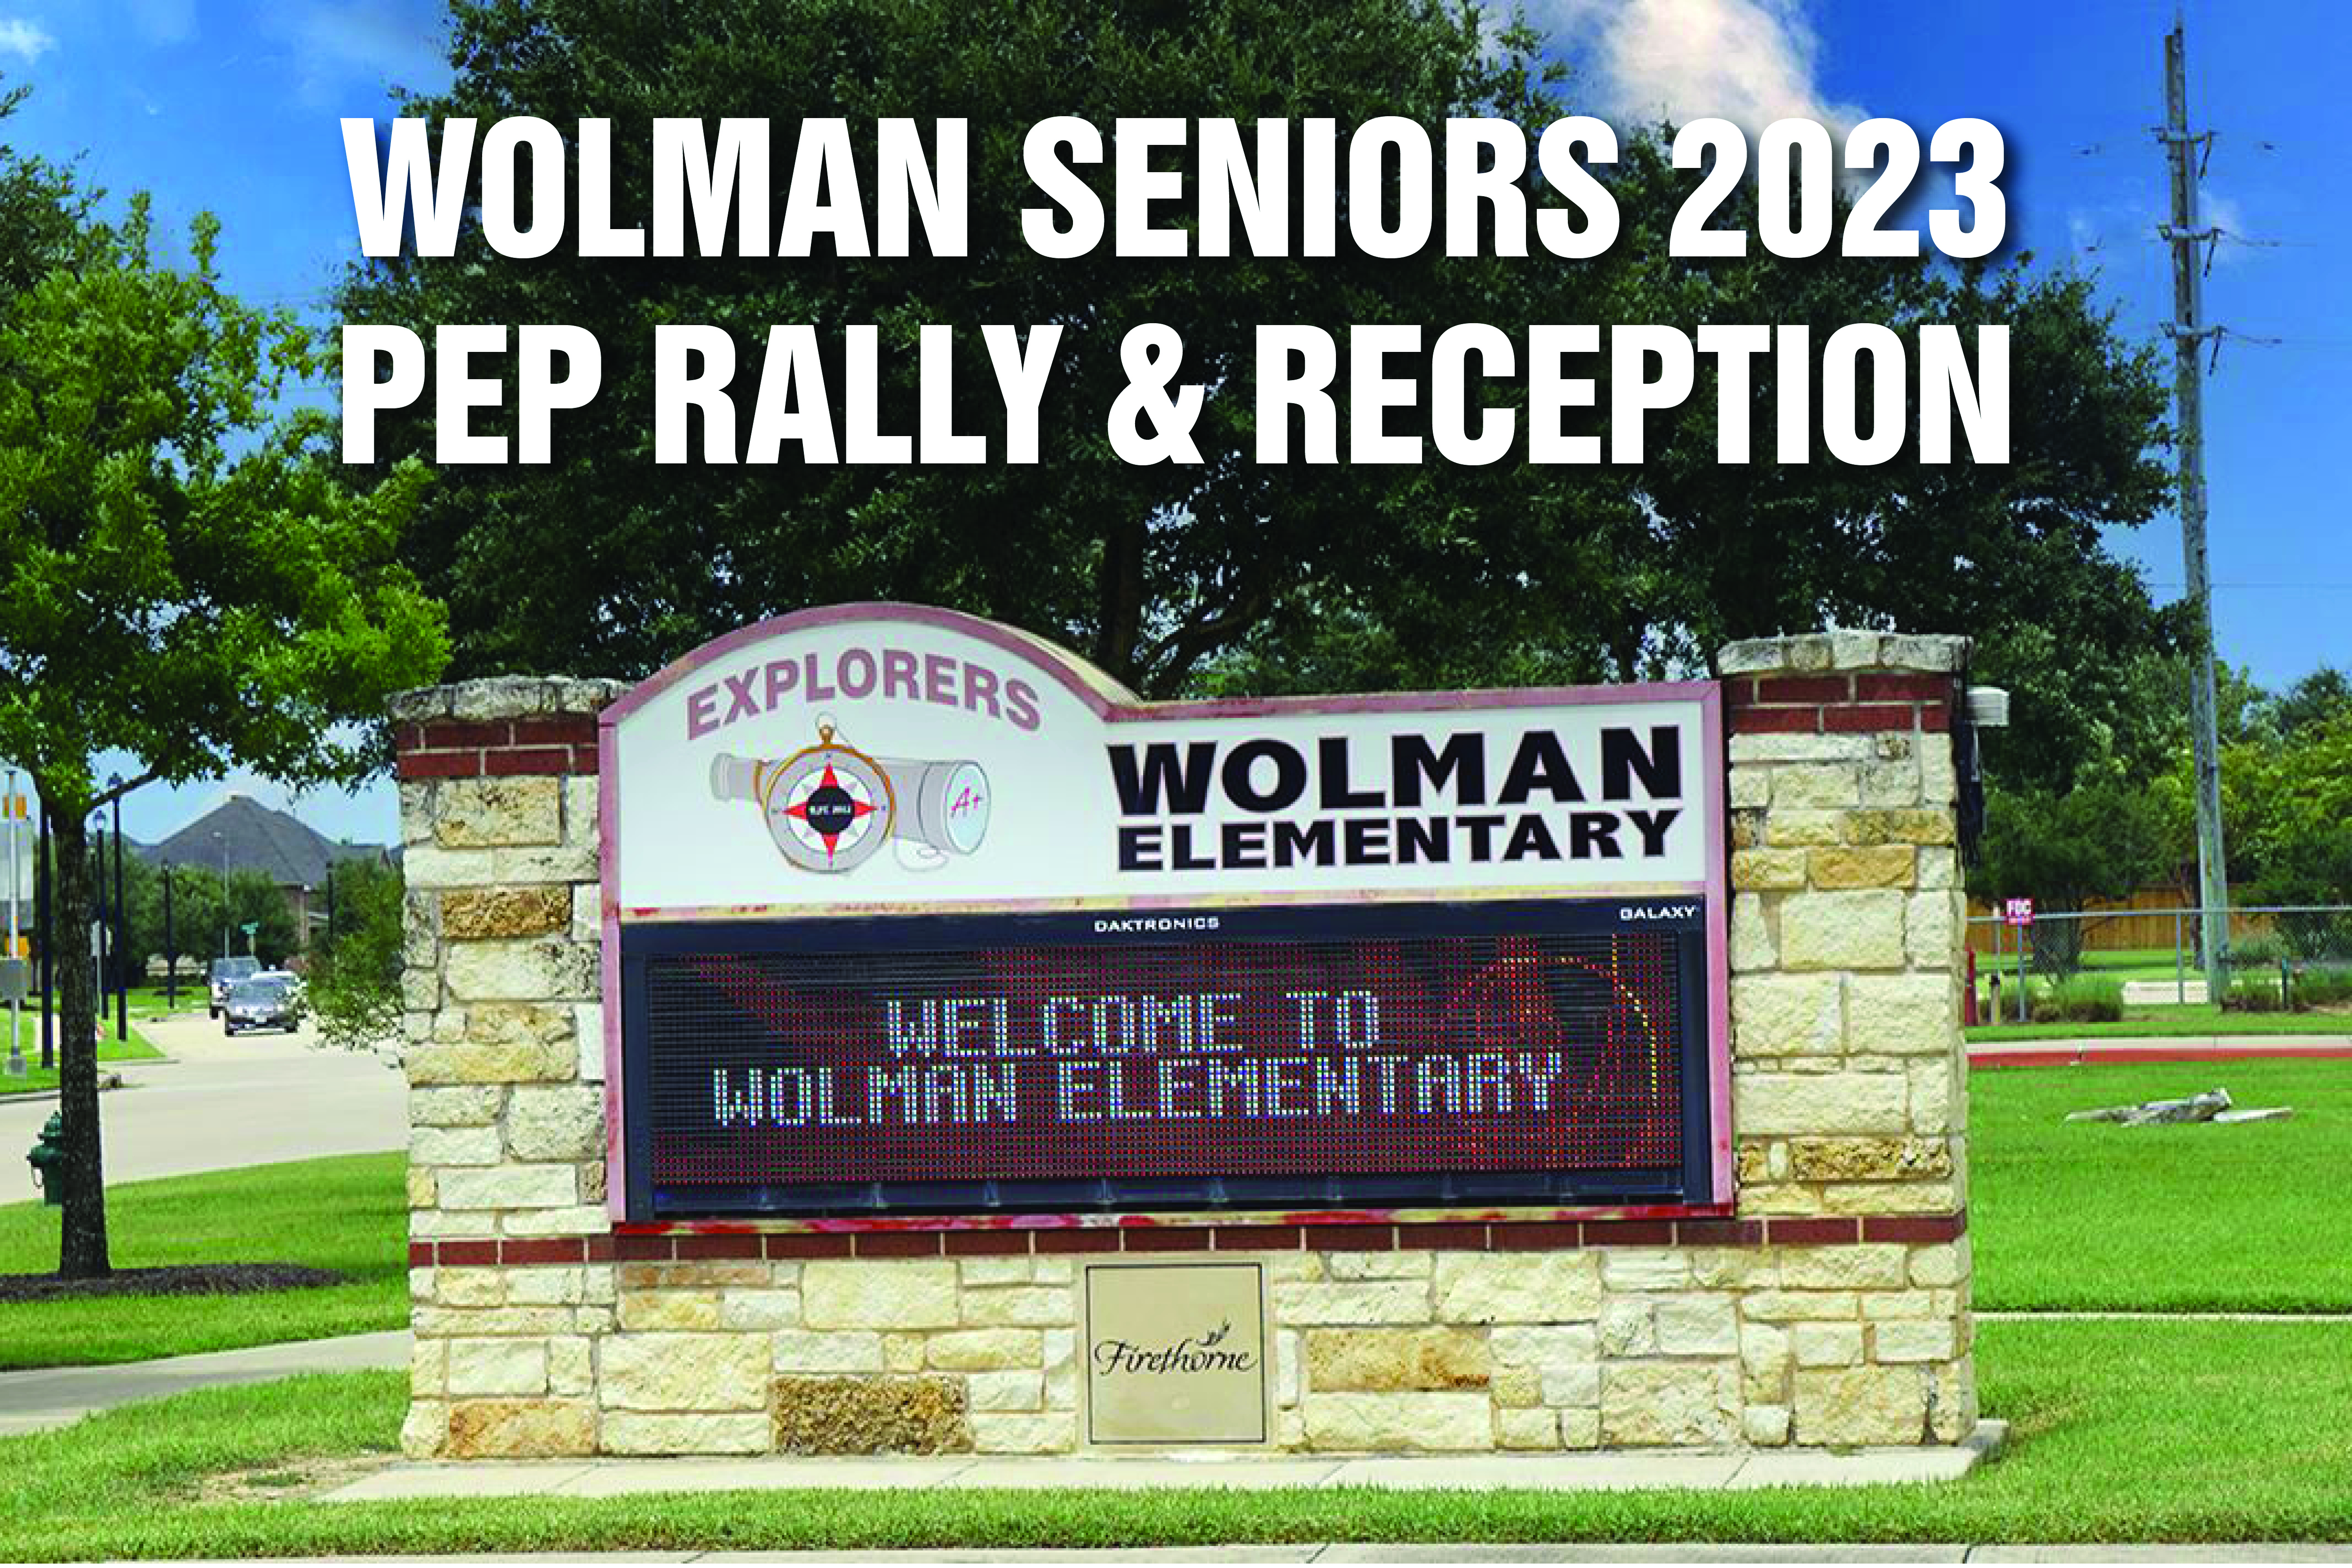 Attention Wolman Elementary Alumni